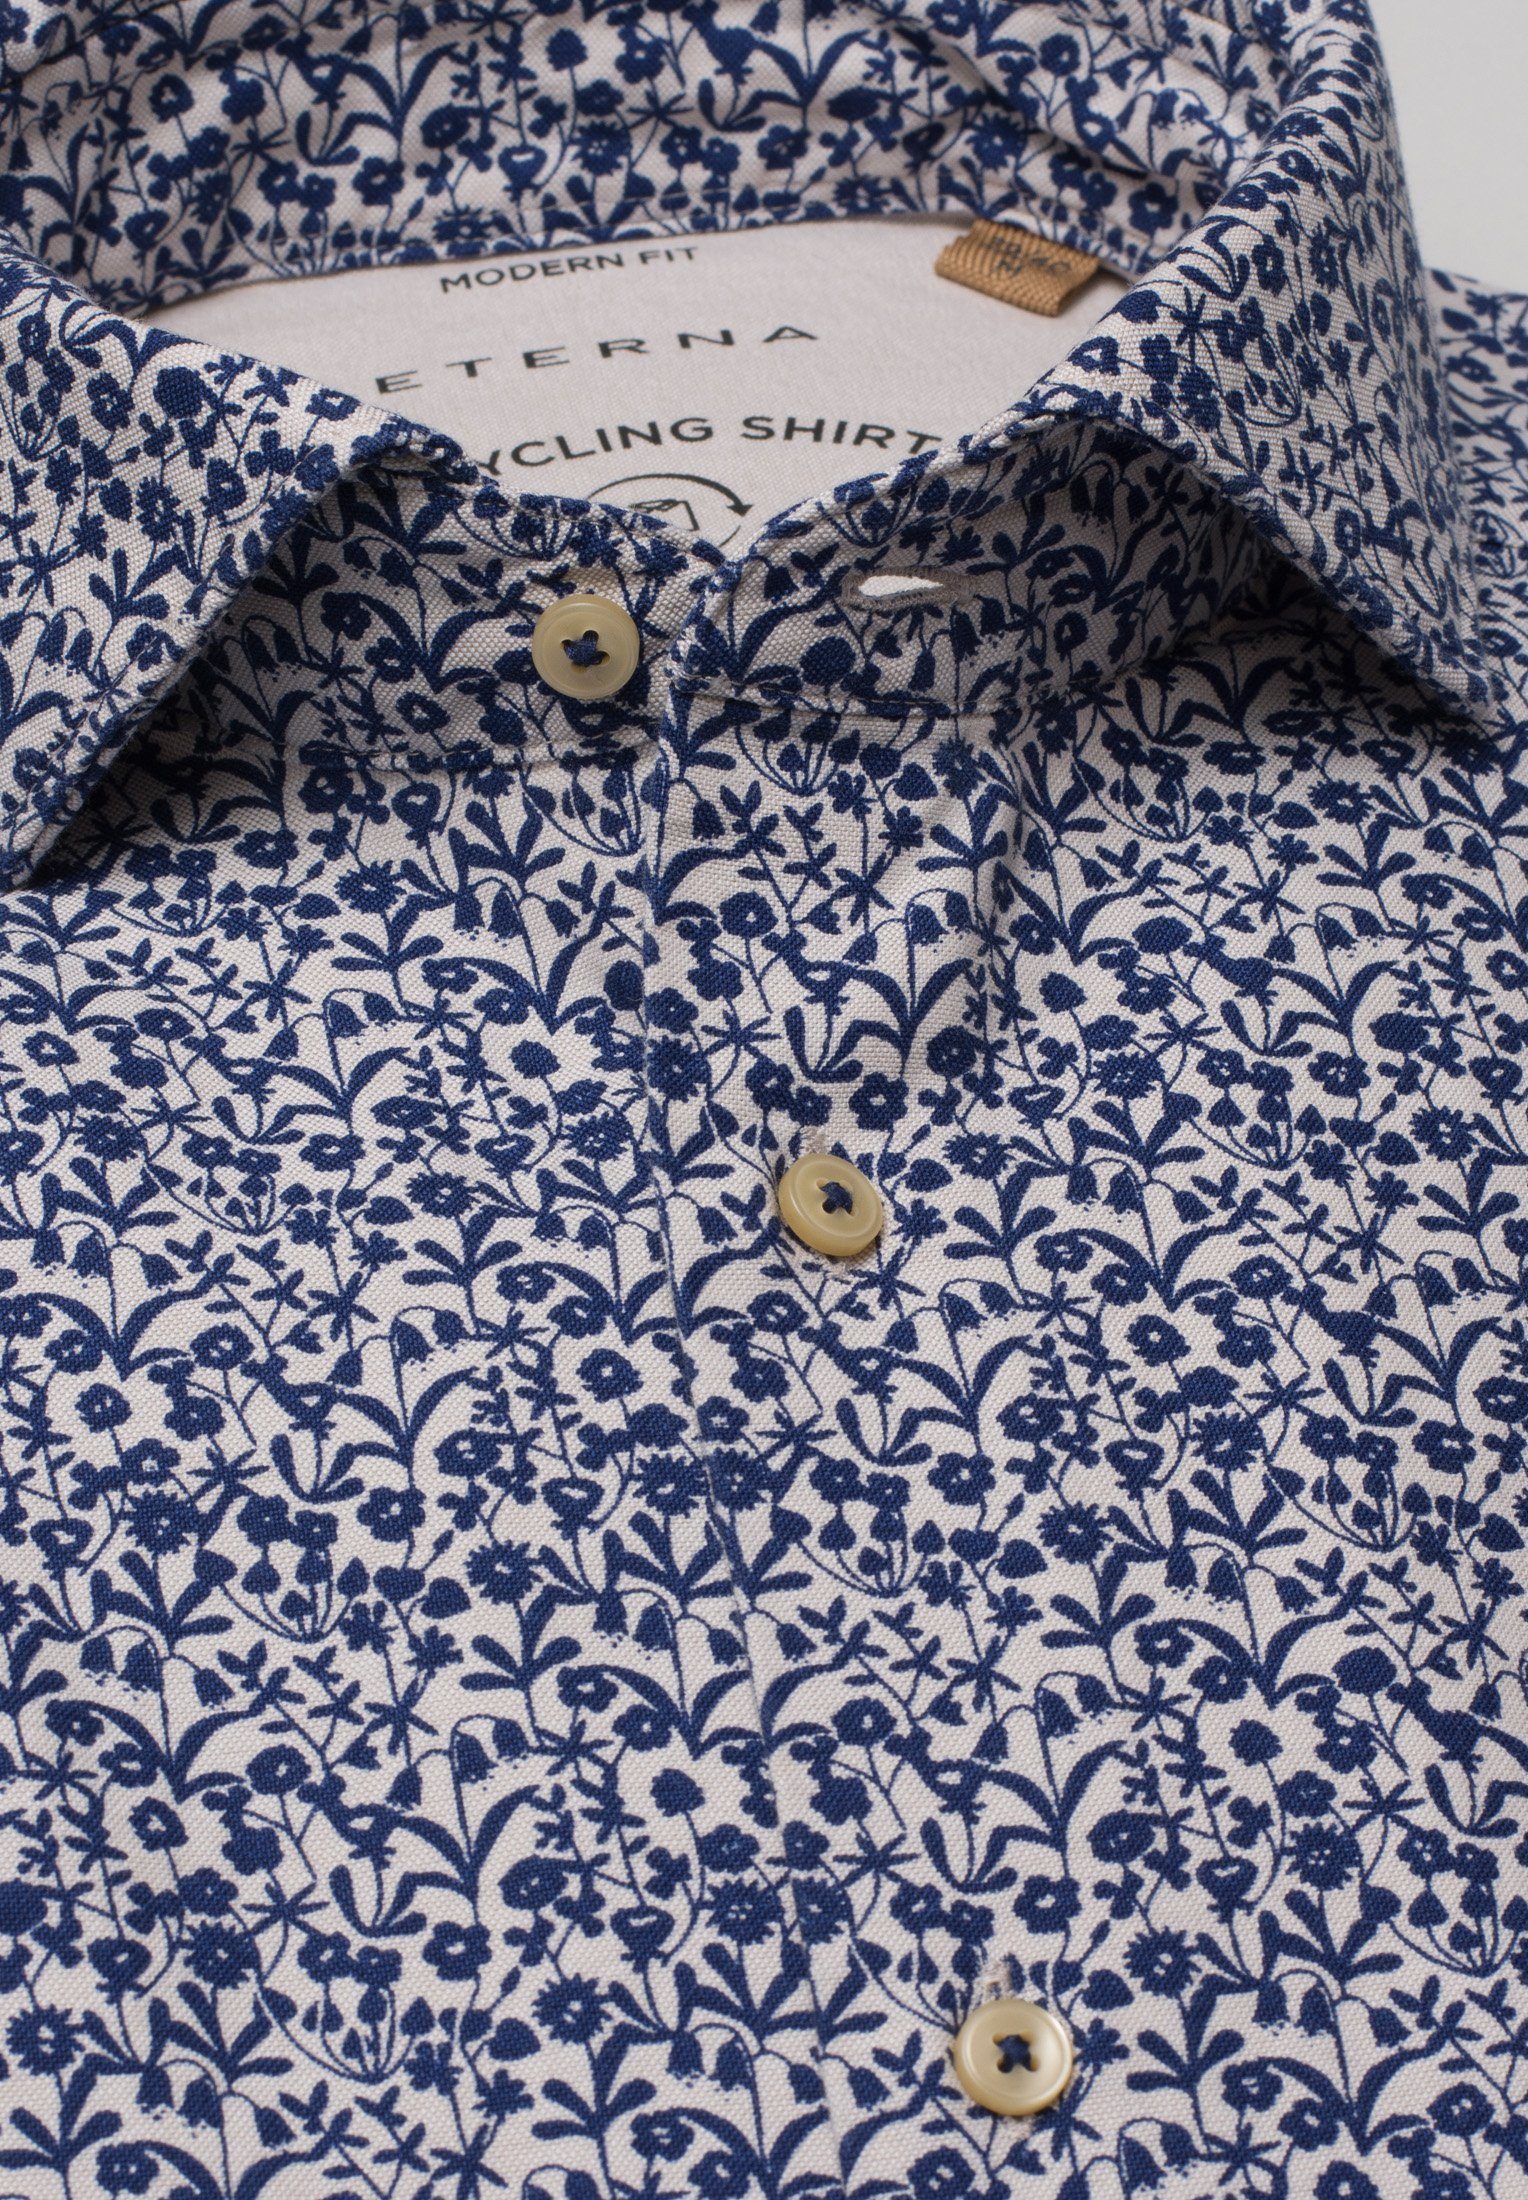 Eterna Klassische Bluse ETERNA REGULAR floral Langarm 2431-18-VS floral UPCYCLING FIT Hemd blau-weiß blau-weiss